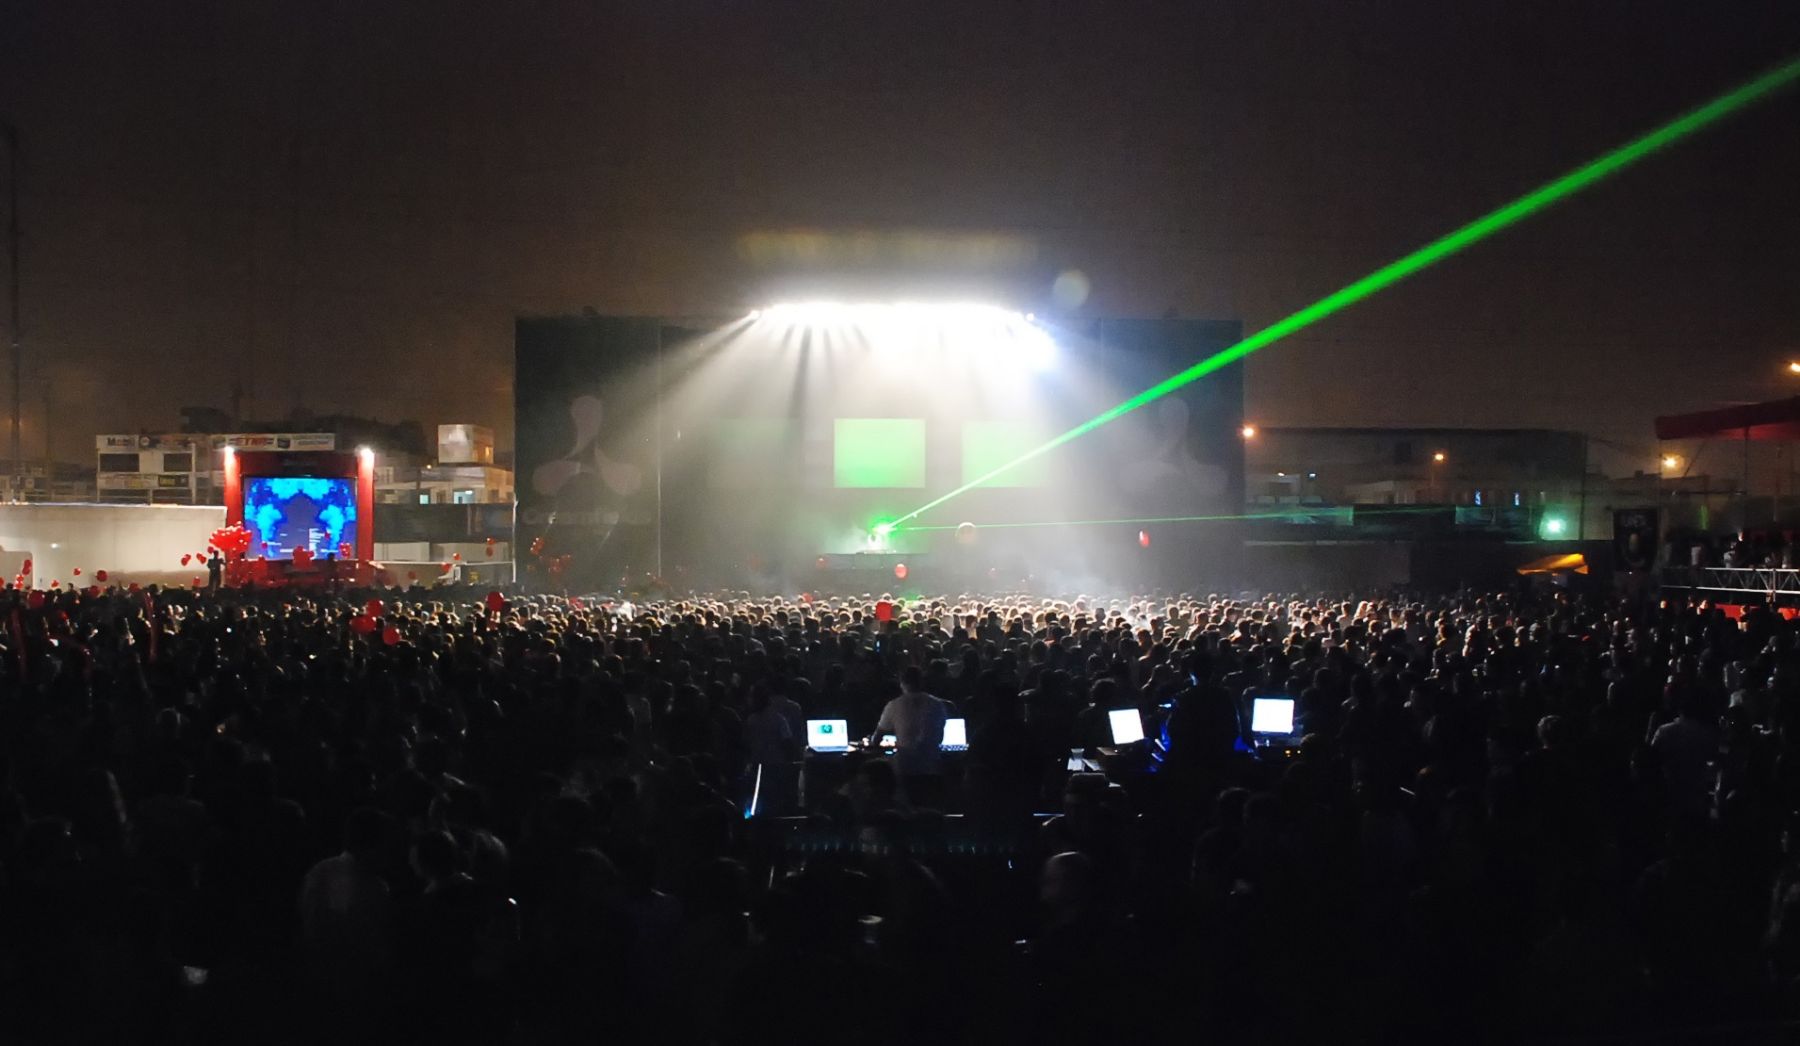 Creamfields Perú, el festival de música electrónica más grande que se canceló por actos de violencia en su décima edición